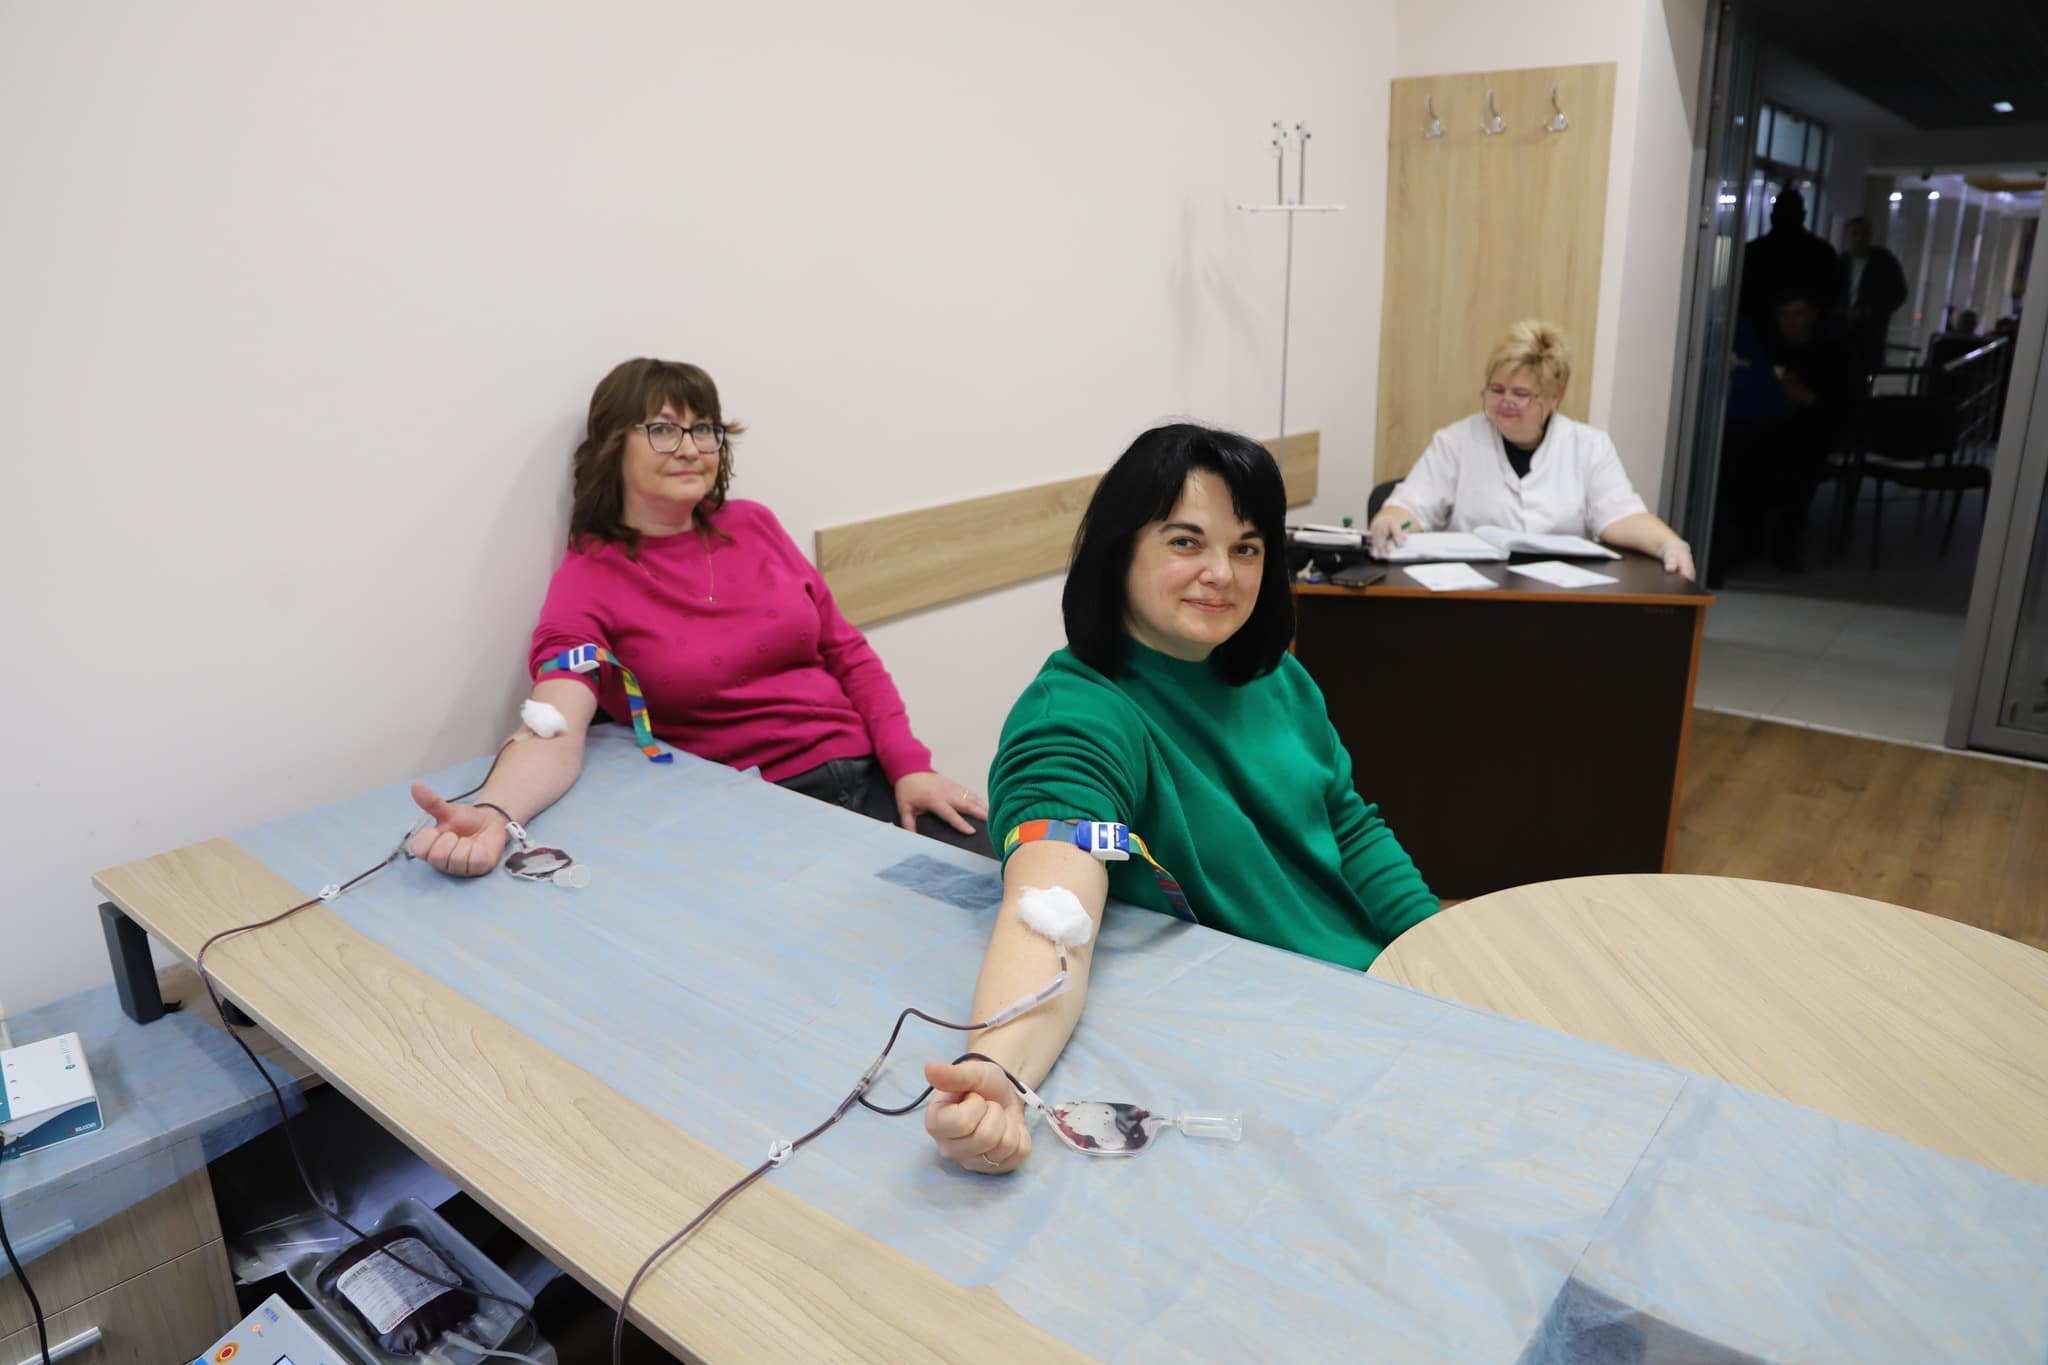 Акція зі здачі крові пройшла 25 січня, у Корпоративний день донора, в Ужгородській міській раді - з ініціативи Закарпатської обласної станції переливання крові та управління охорони здоров’я та цивільного захисту населення